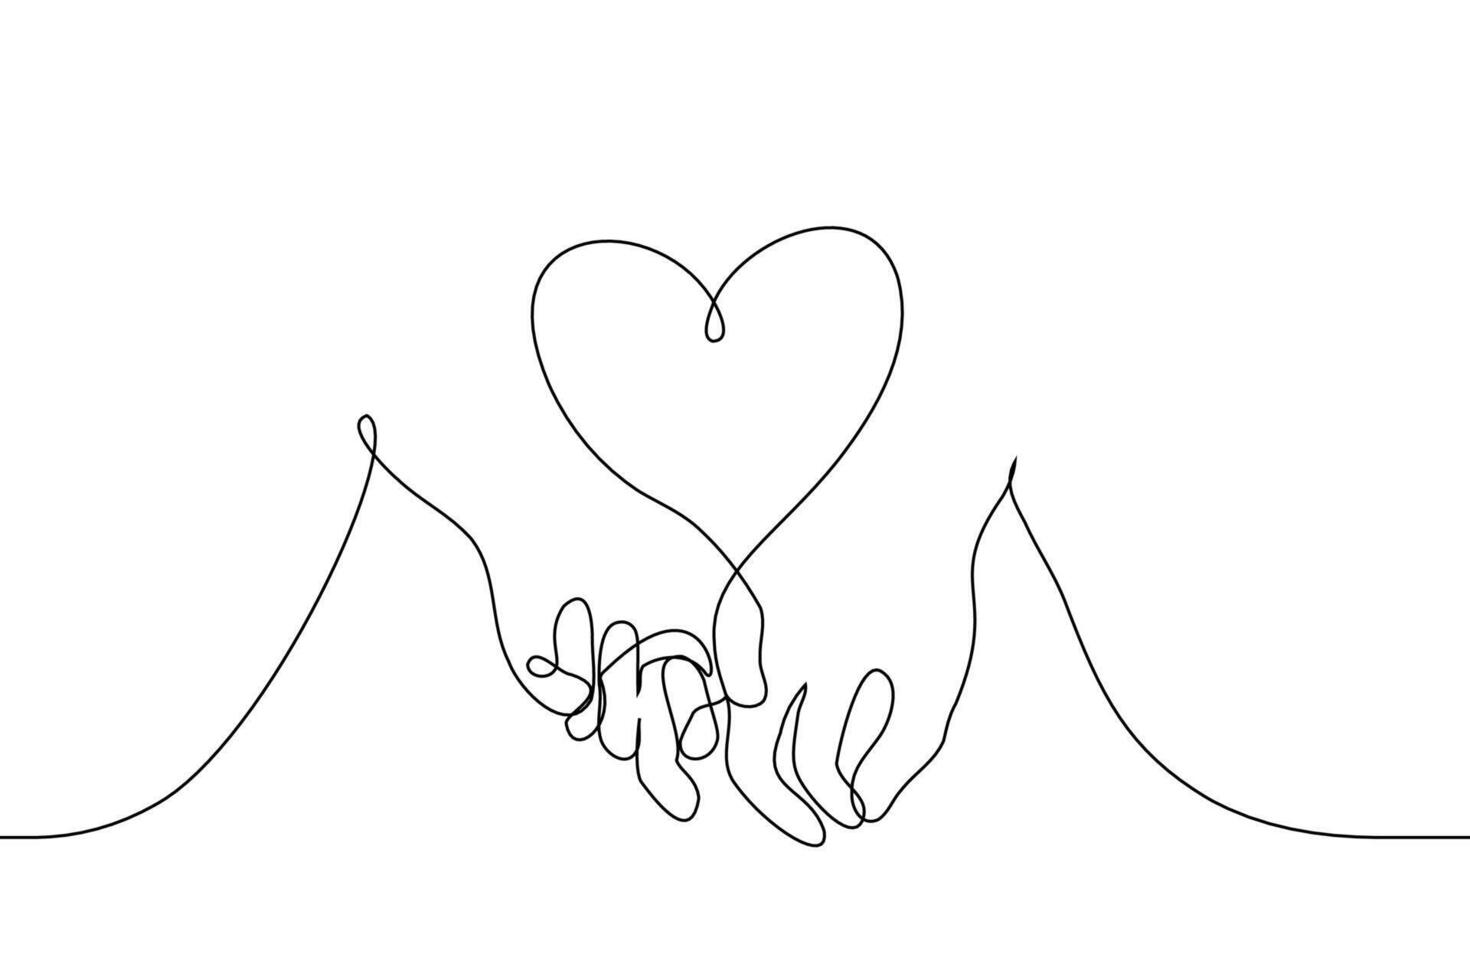 dos humano manos sostener dedos para cada otro espacio Entre ellos en forma de corazón - uno línea dibujo vector. concepto de dos amantes, recién casados, Pareja skinship vector